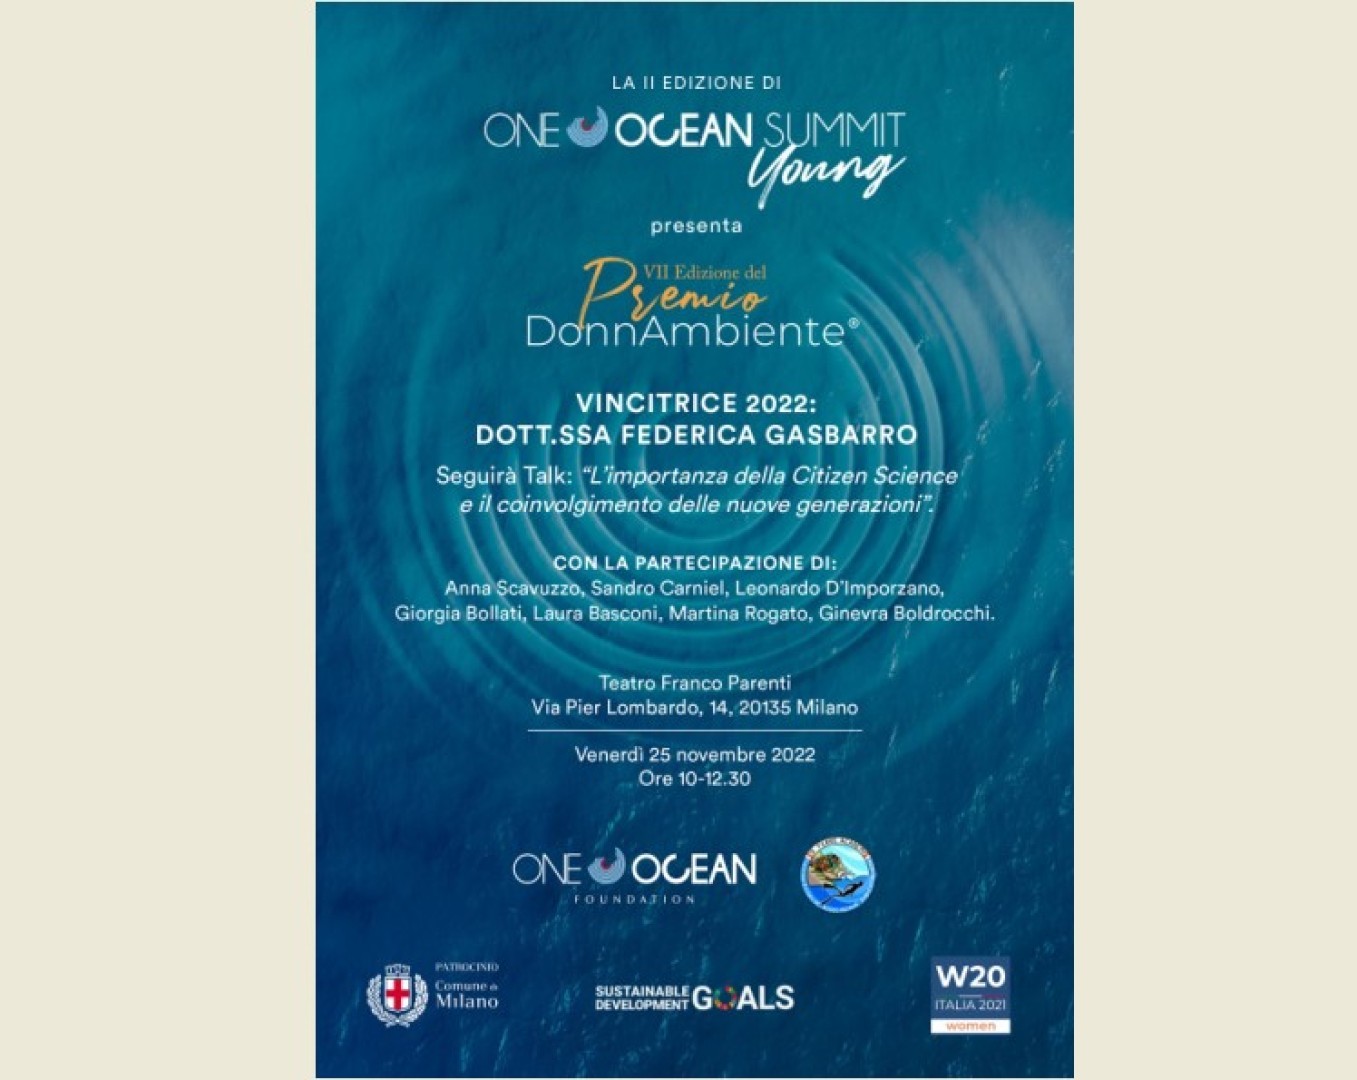 One Ocean Summit Young: il 25 novembre al Teatro Franco Parenti di Milano